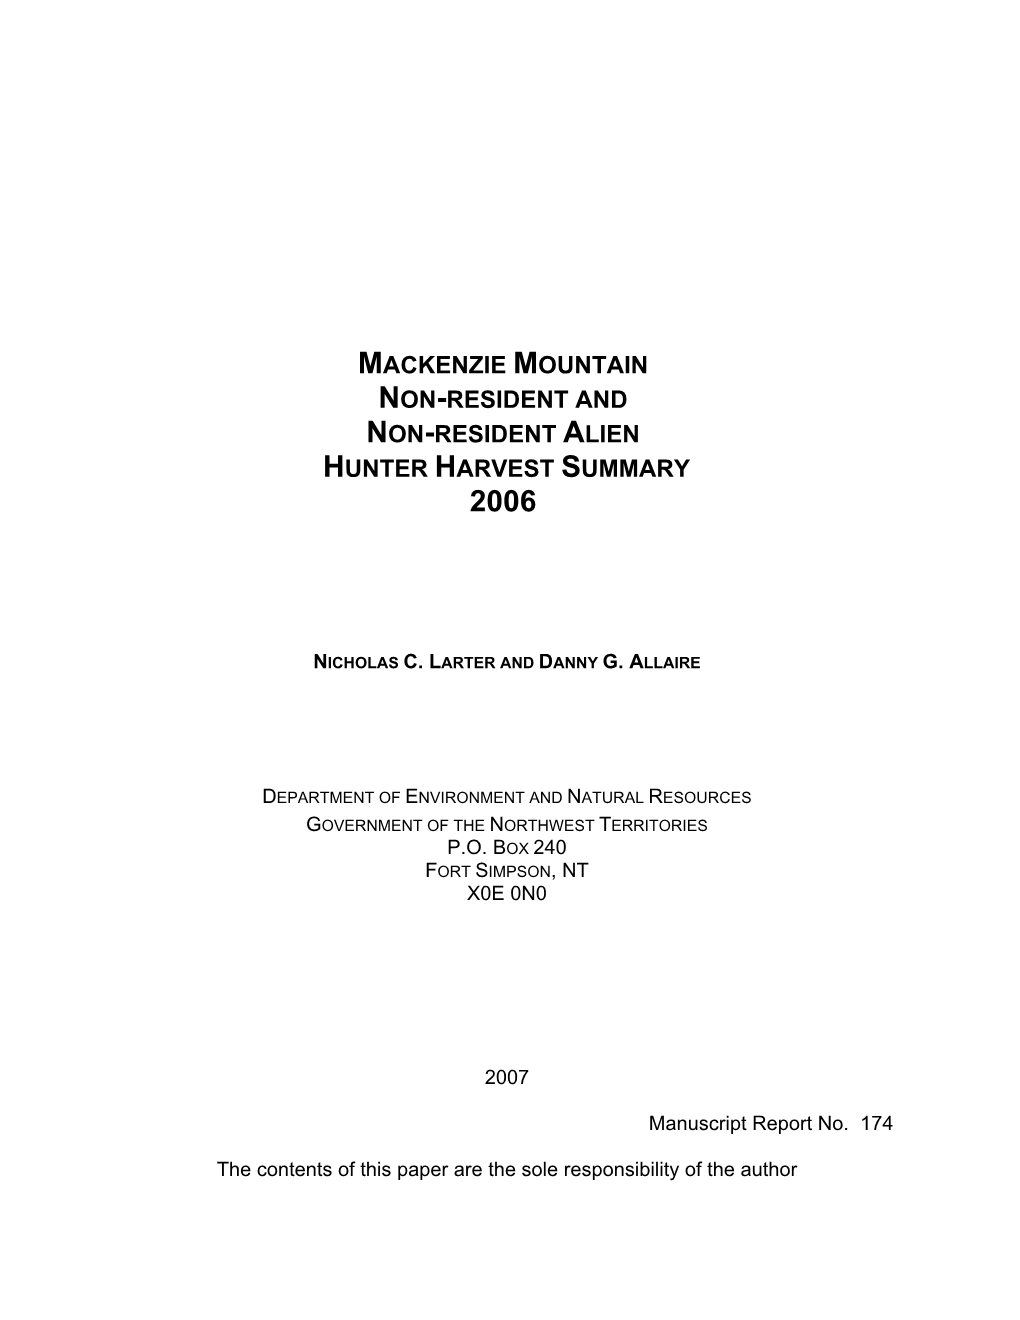 Mackenzie Mountain Non-Resident and Non-Resident Alien Hunter Harvest Summary 2002